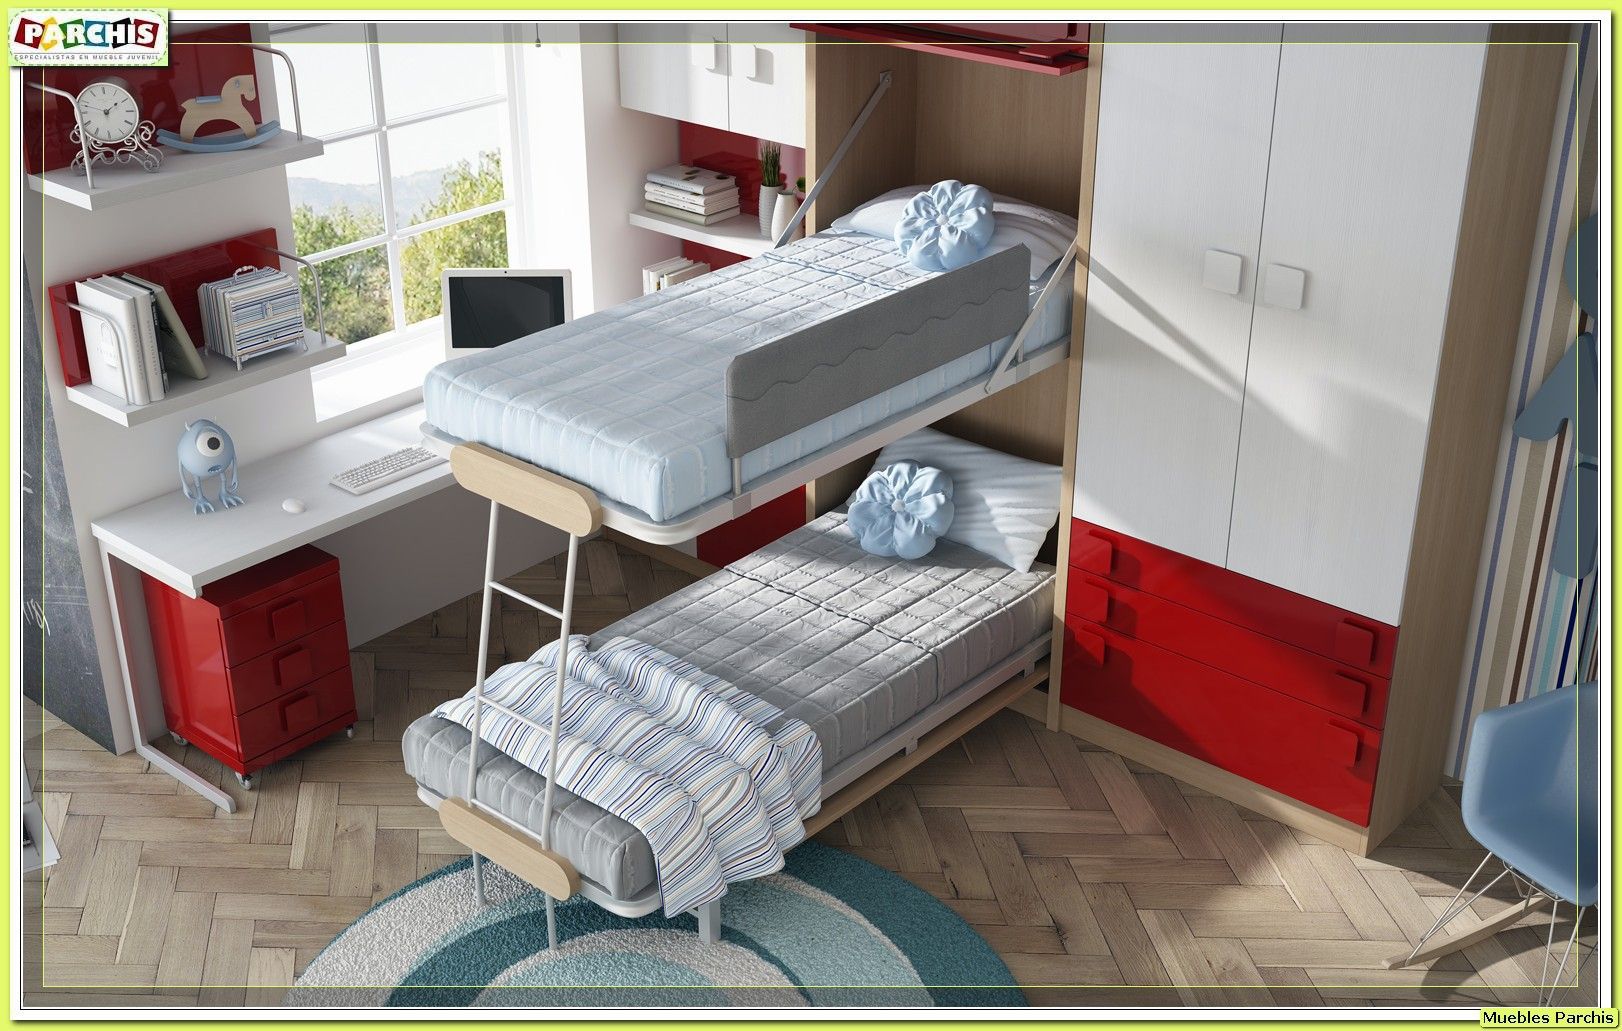 cama vertical convertible Muebles Parchis. Dormitorios Juveniles. Habitaciones modernas Camas y cabeceros